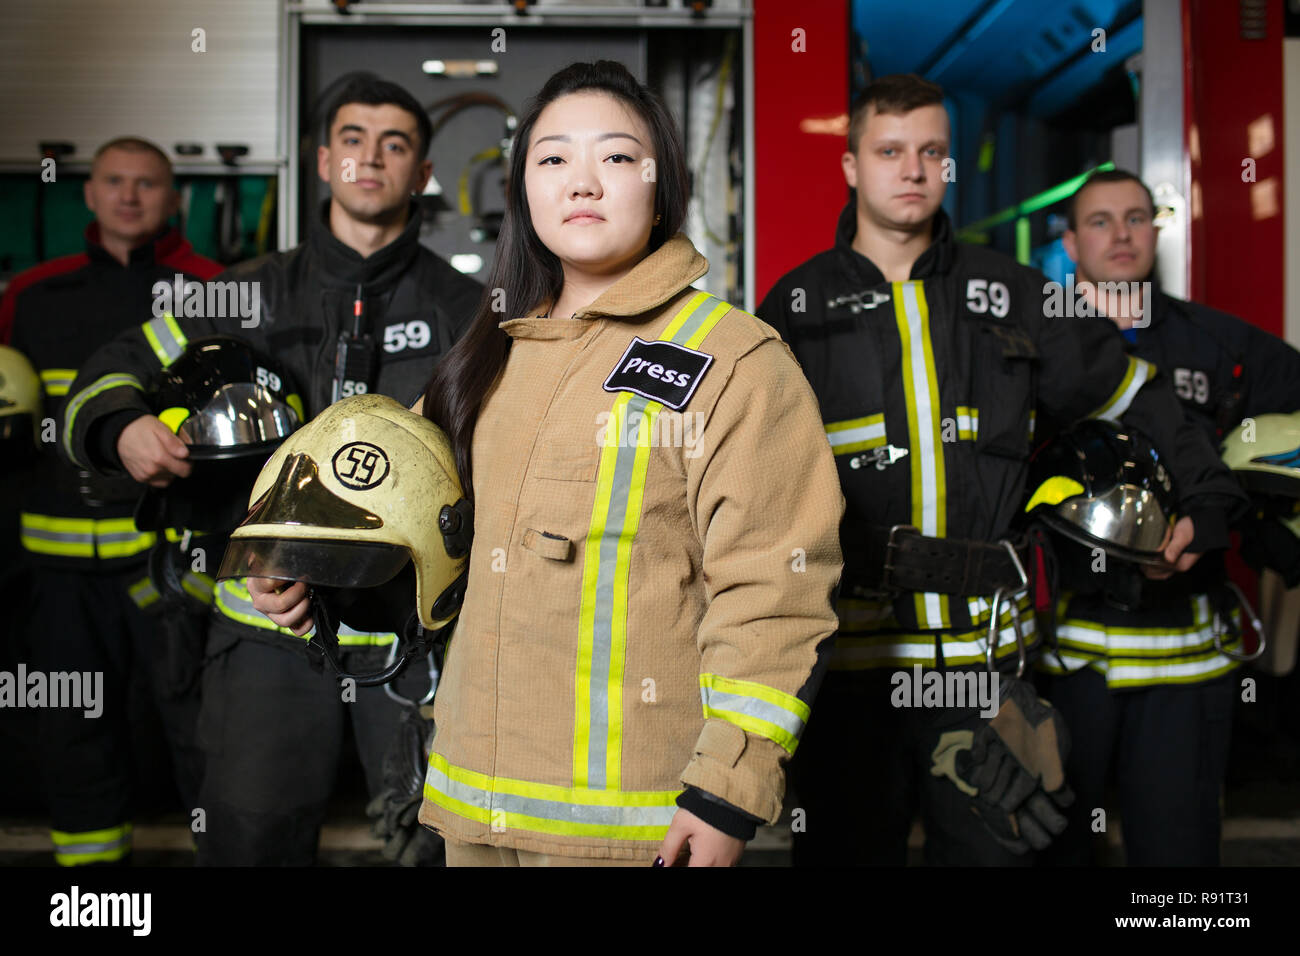 Retrato de cuatro jóvenes varones y mujeres bomberos en el fondo de un camión de bomberos Foto de stock